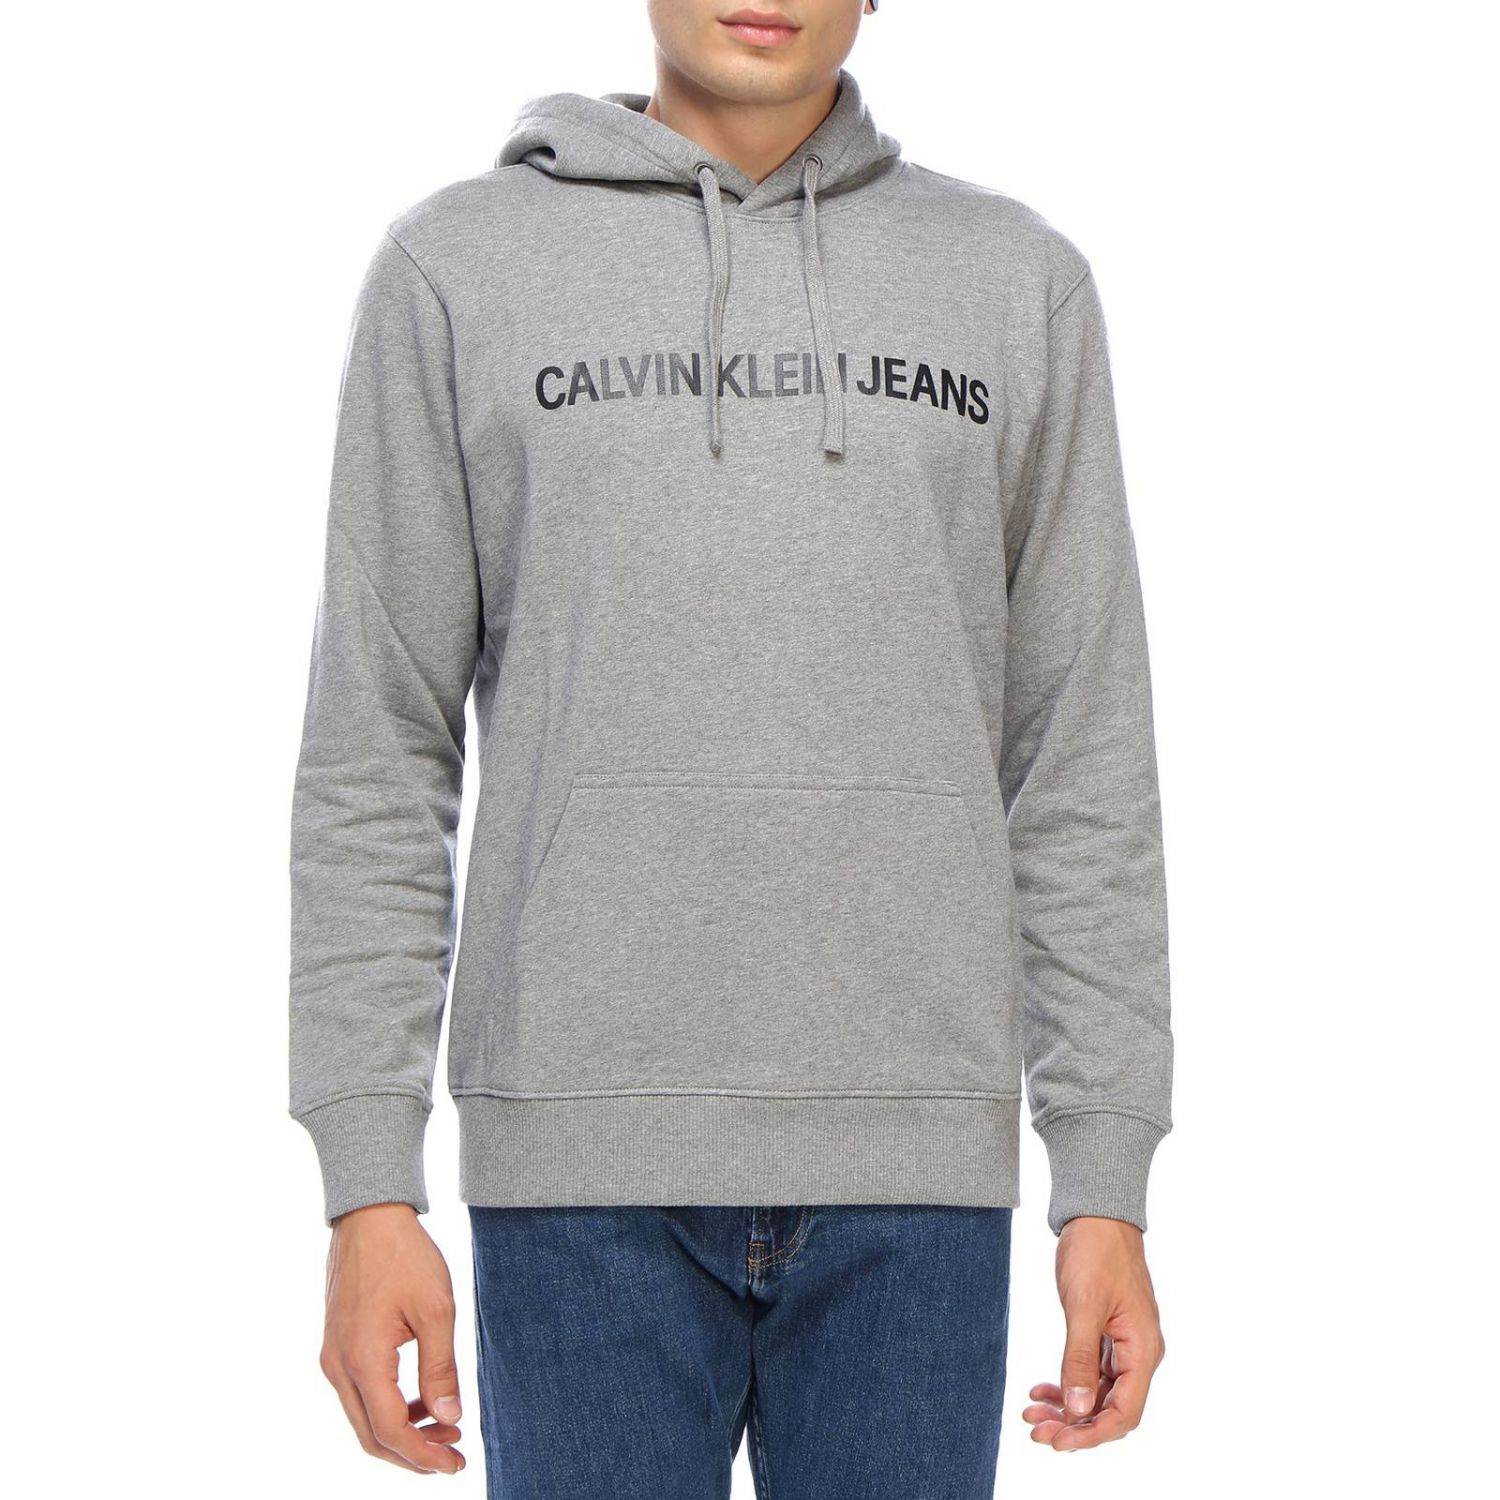 Calvin Klein Jeans Outlet: Sweater men - Grey | Sweatshirt Calvin Klein ...